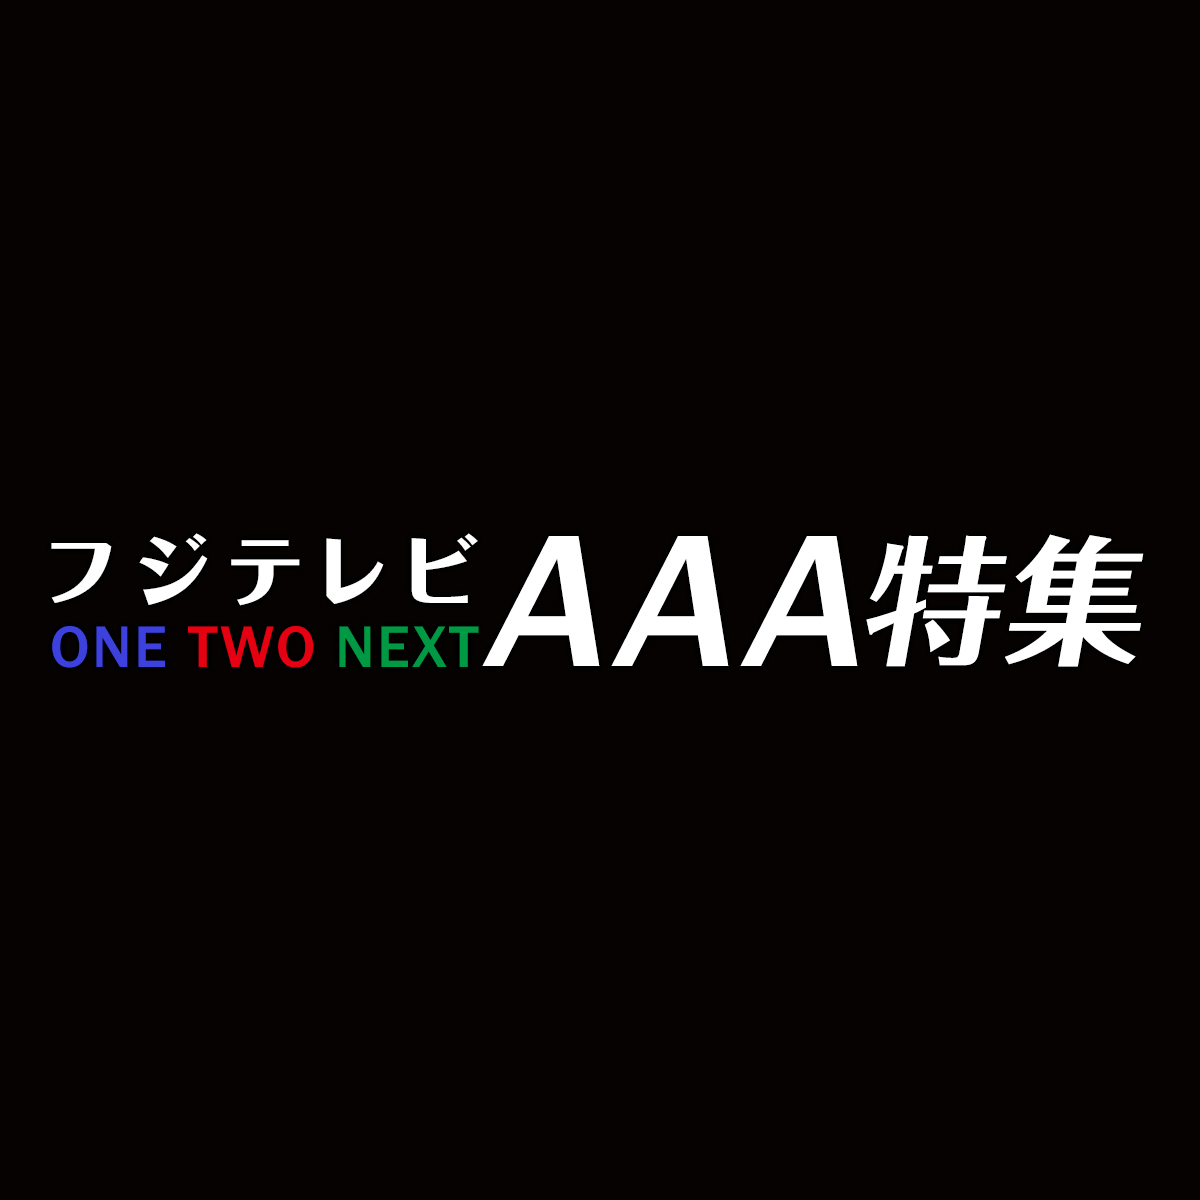 フジテレビ ONE TWO NEXT（ワンツーネクスト） AAA特集